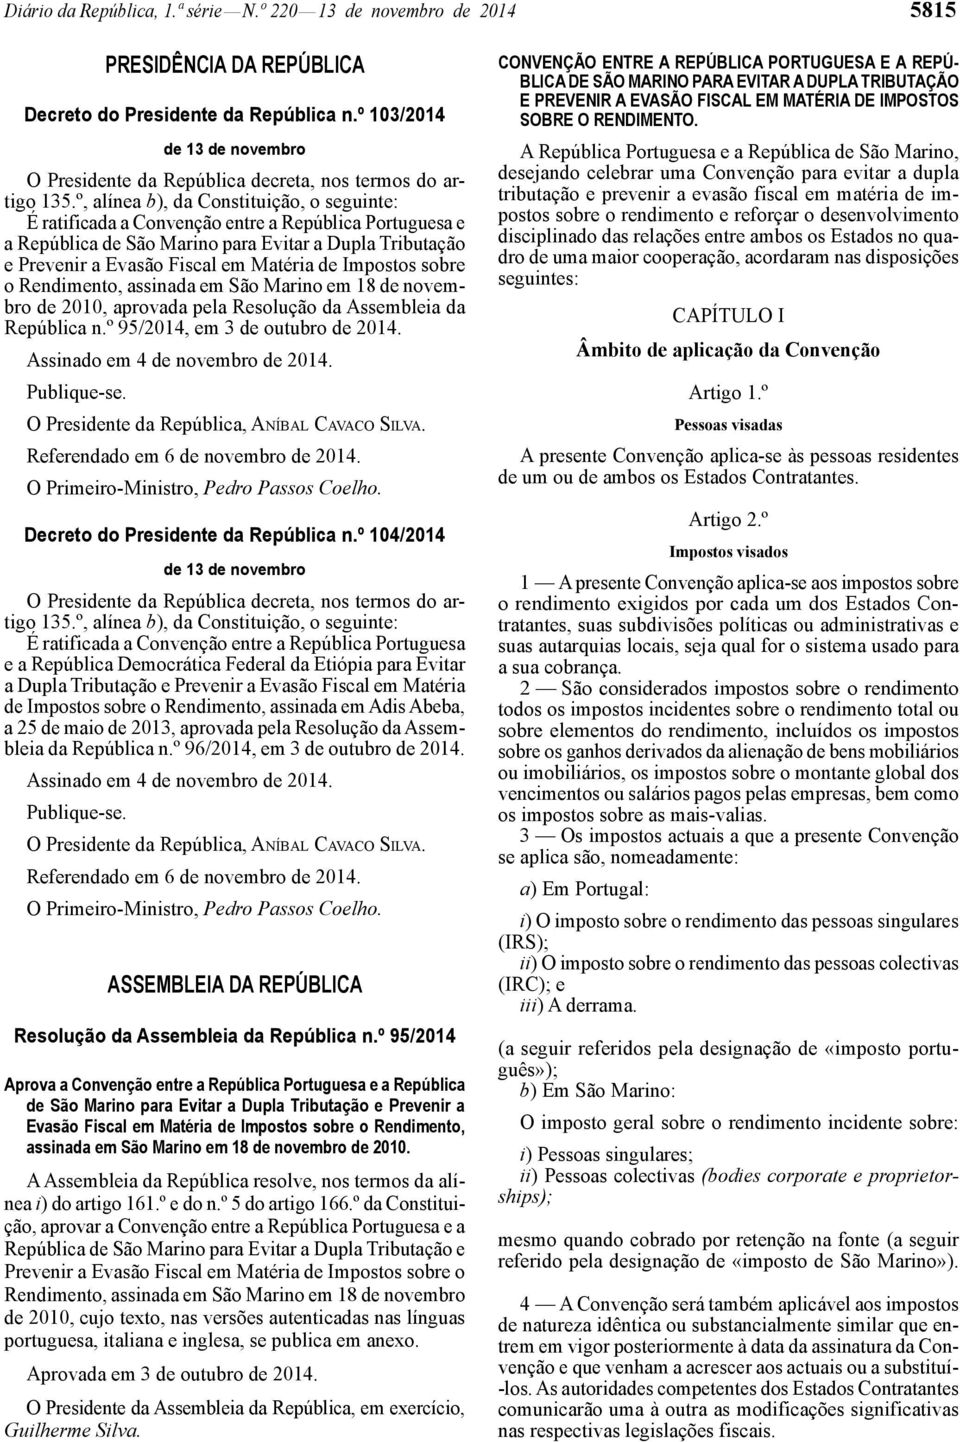 º, alínea b), da Constituição, o seguinte: É ratificada a Convenção entre a República Portuguesa e a República de São Marino para Evitar a Dupla Tributação e Prevenir a Evasão Fiscal em Matéria de